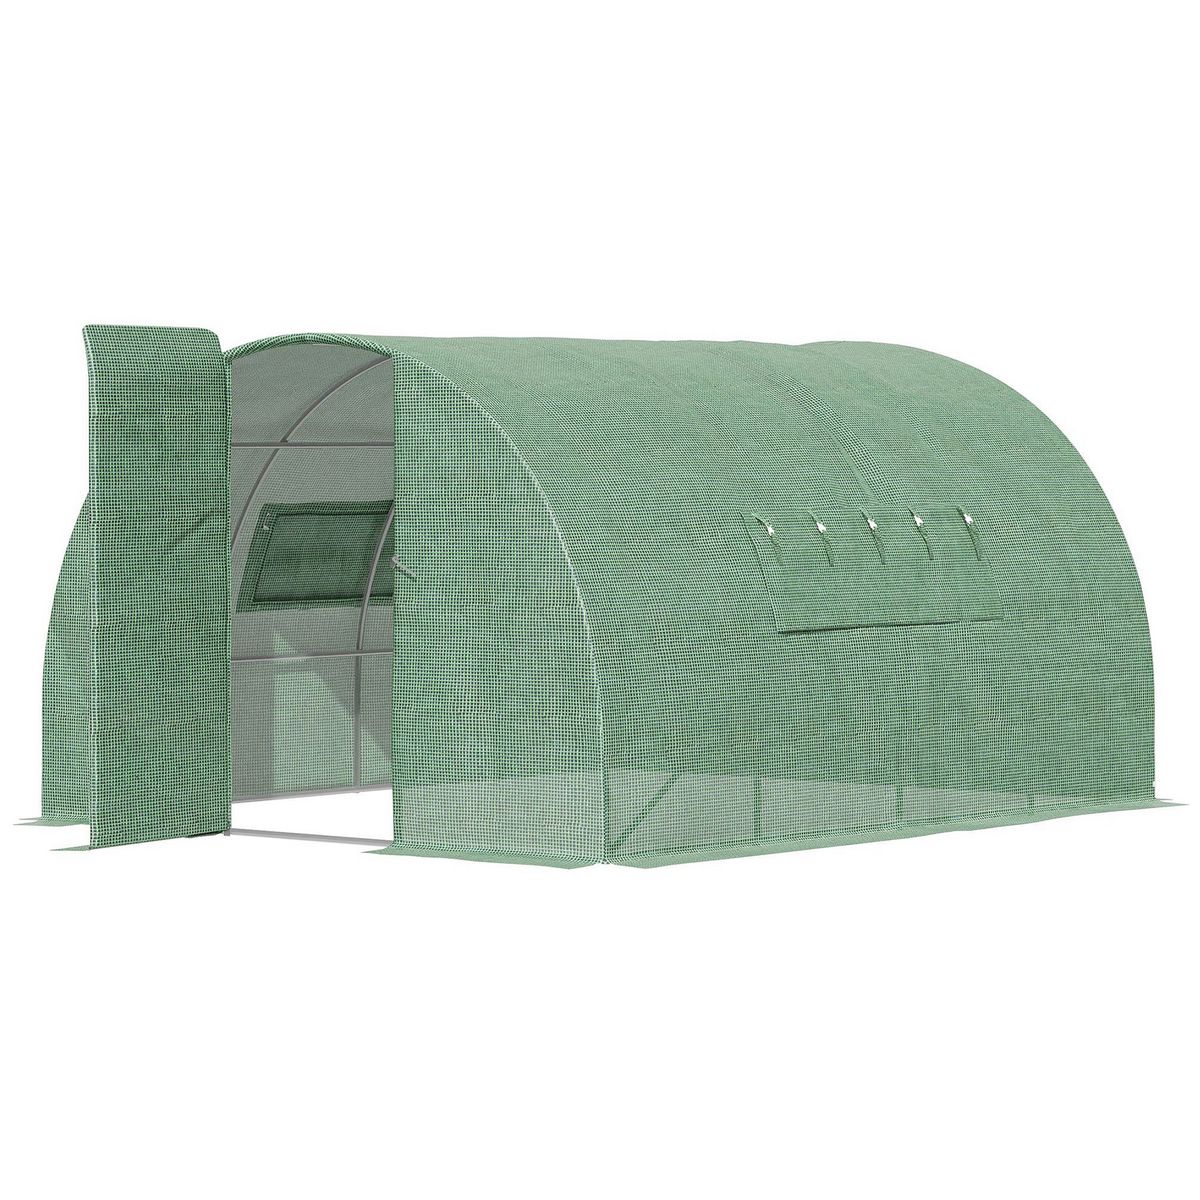 OUTSUNNY Serre de jardin tunnel 11 m² acier galvanisé renforcé diamètre 2,4 cm + PE haute densité fenêtres porte vert